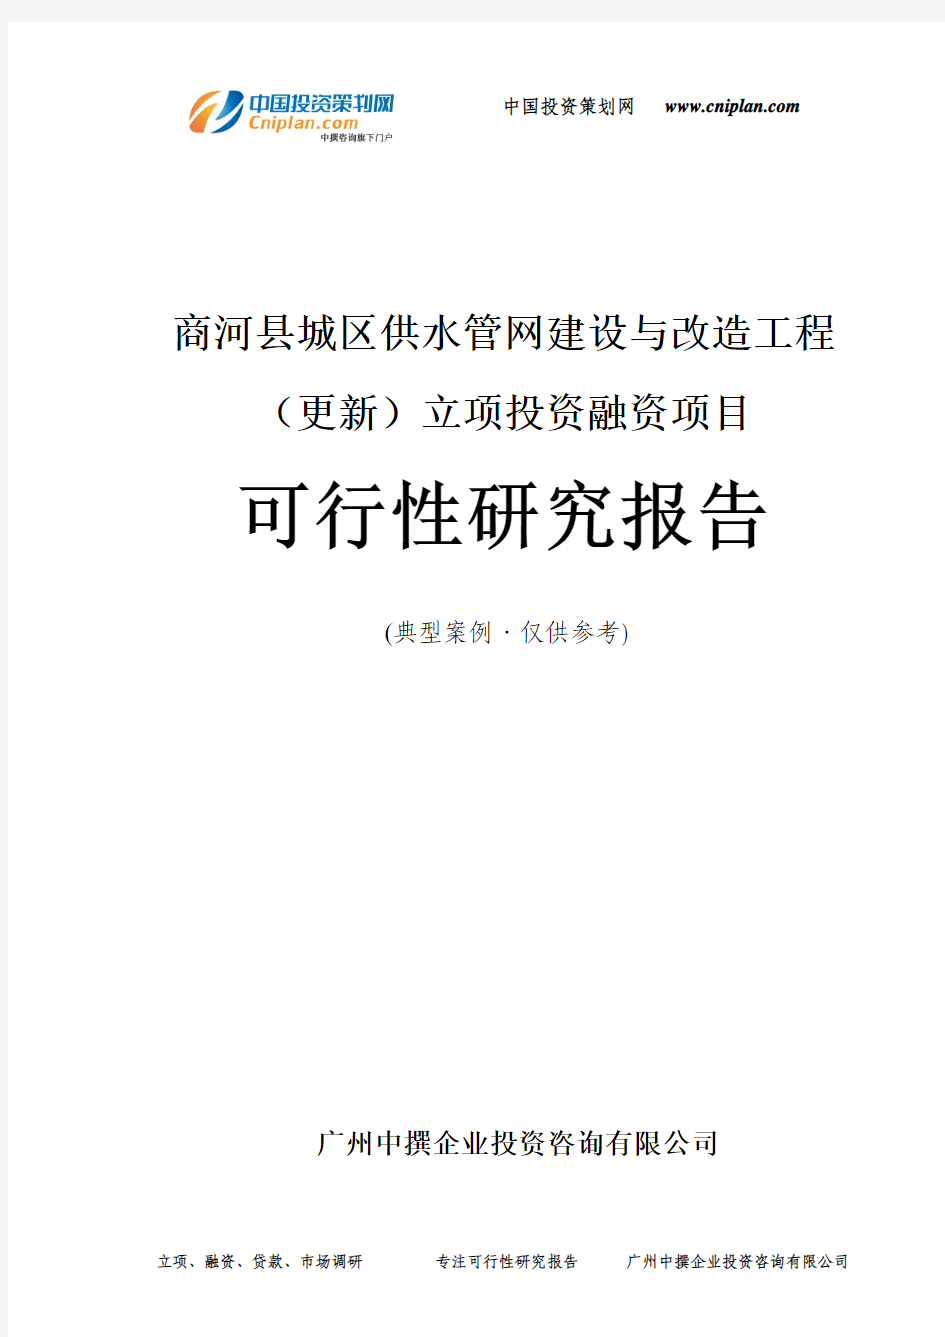 商河县城区供水管网建设与改造工程(更新)融资投资立项项目可行性研究报告(非常详细)